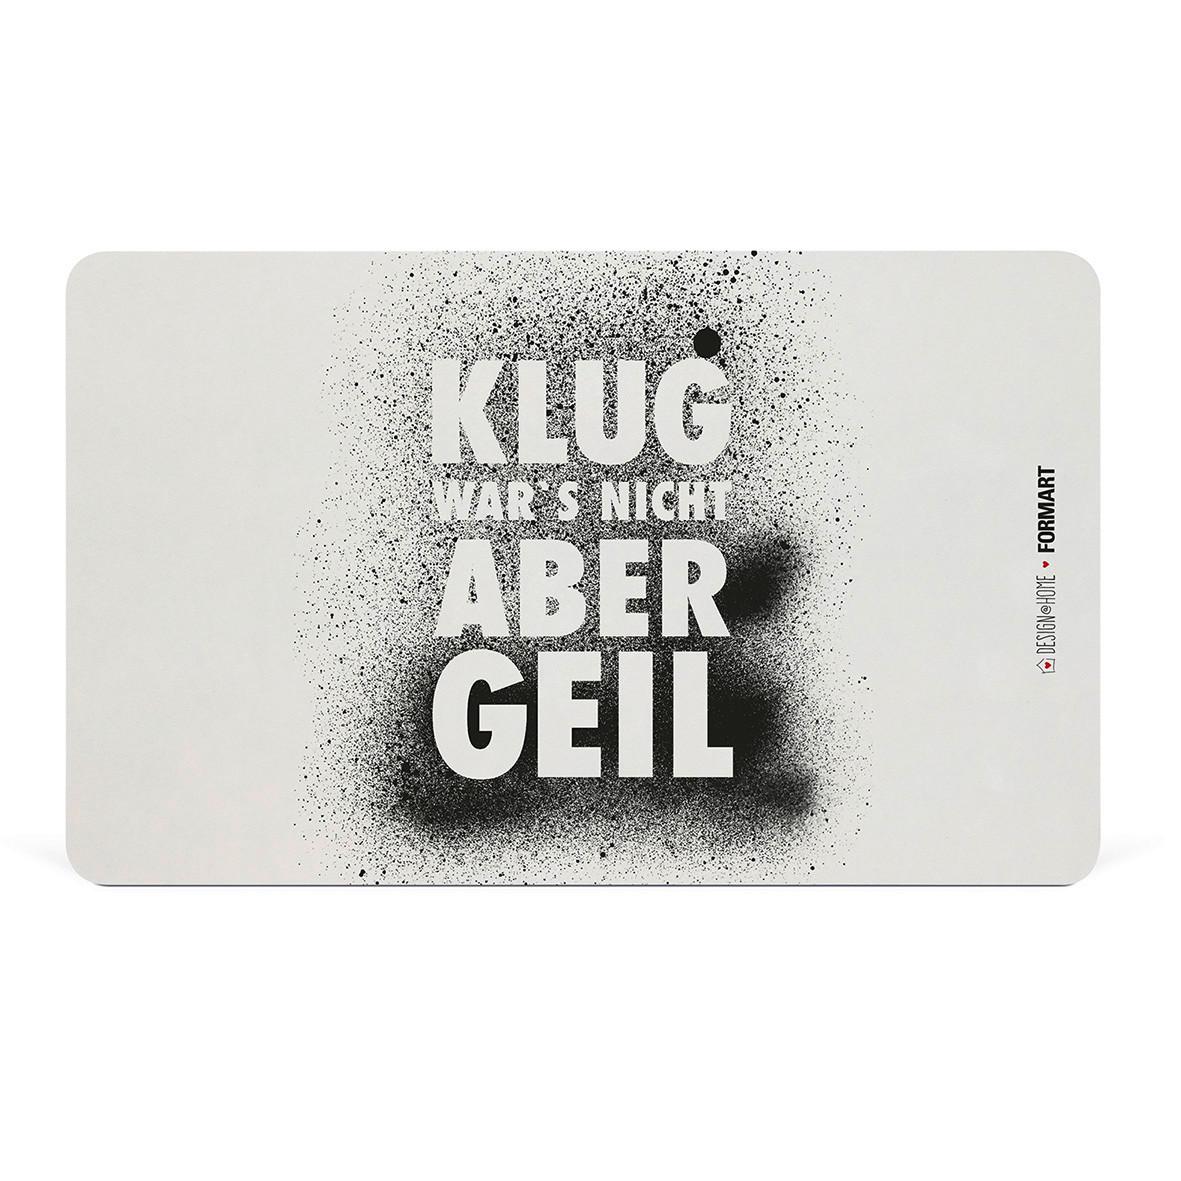 Schneidebrett Klug wars nicht aus Kunststoff in Schwarz/Weiß - Schwarz/Weiß, MODERN, Kunststoff (23,3/14,3/0,2cm)